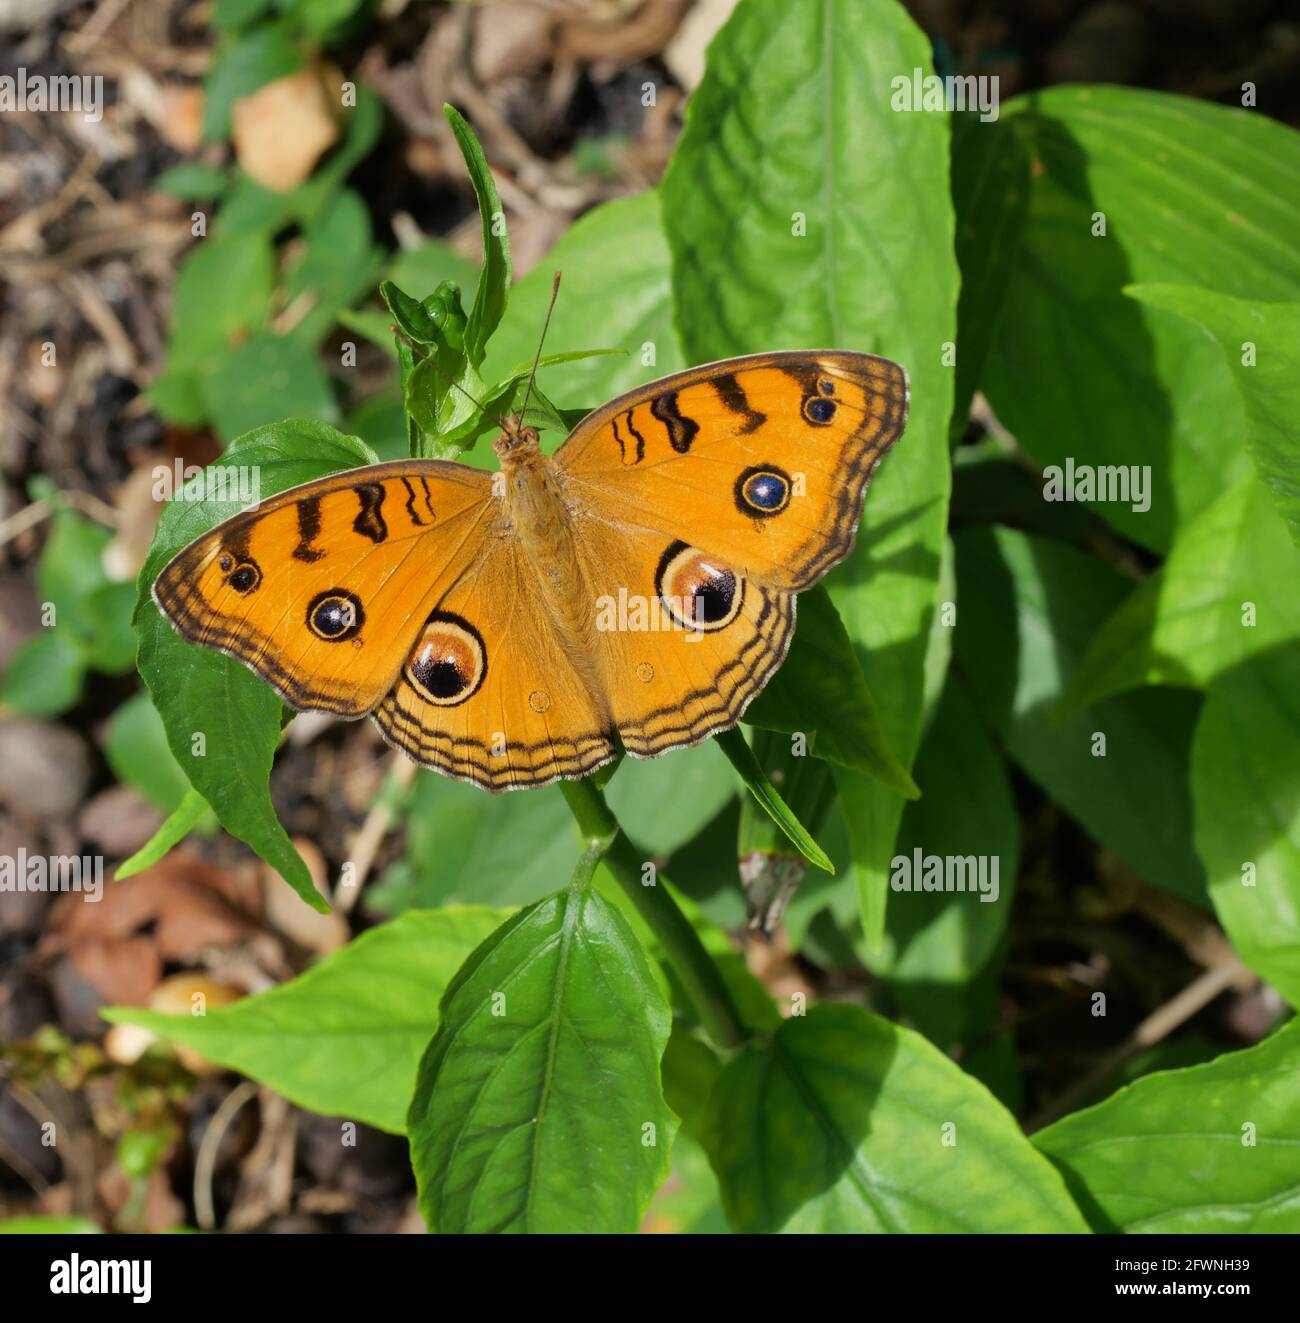 Der Pfauenpfannenschmetterling (Junonia almana) auf Blatt mit natürlichem grünem Hintergrund, Muster ähnlich wie die Augen auf dem Flügel eines orangefarbenen Insekts Stockfoto